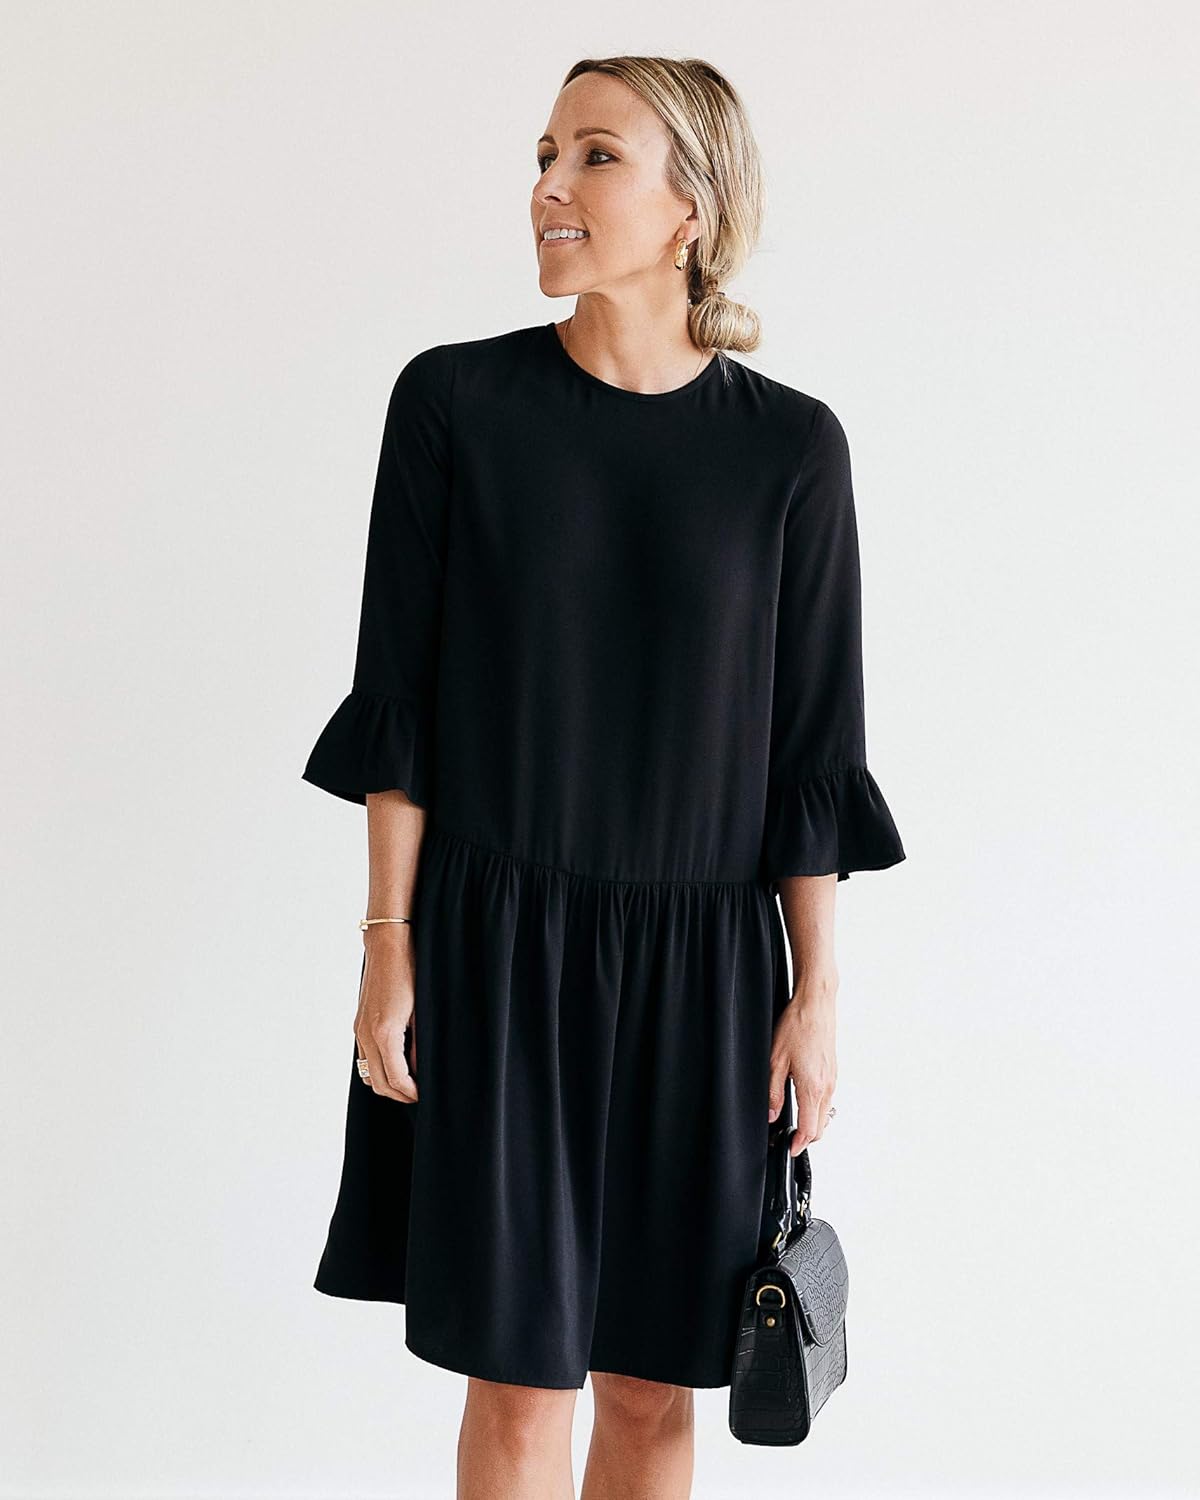 The Drop Women' Black Drop-Waist Dress by @jaceyduprie